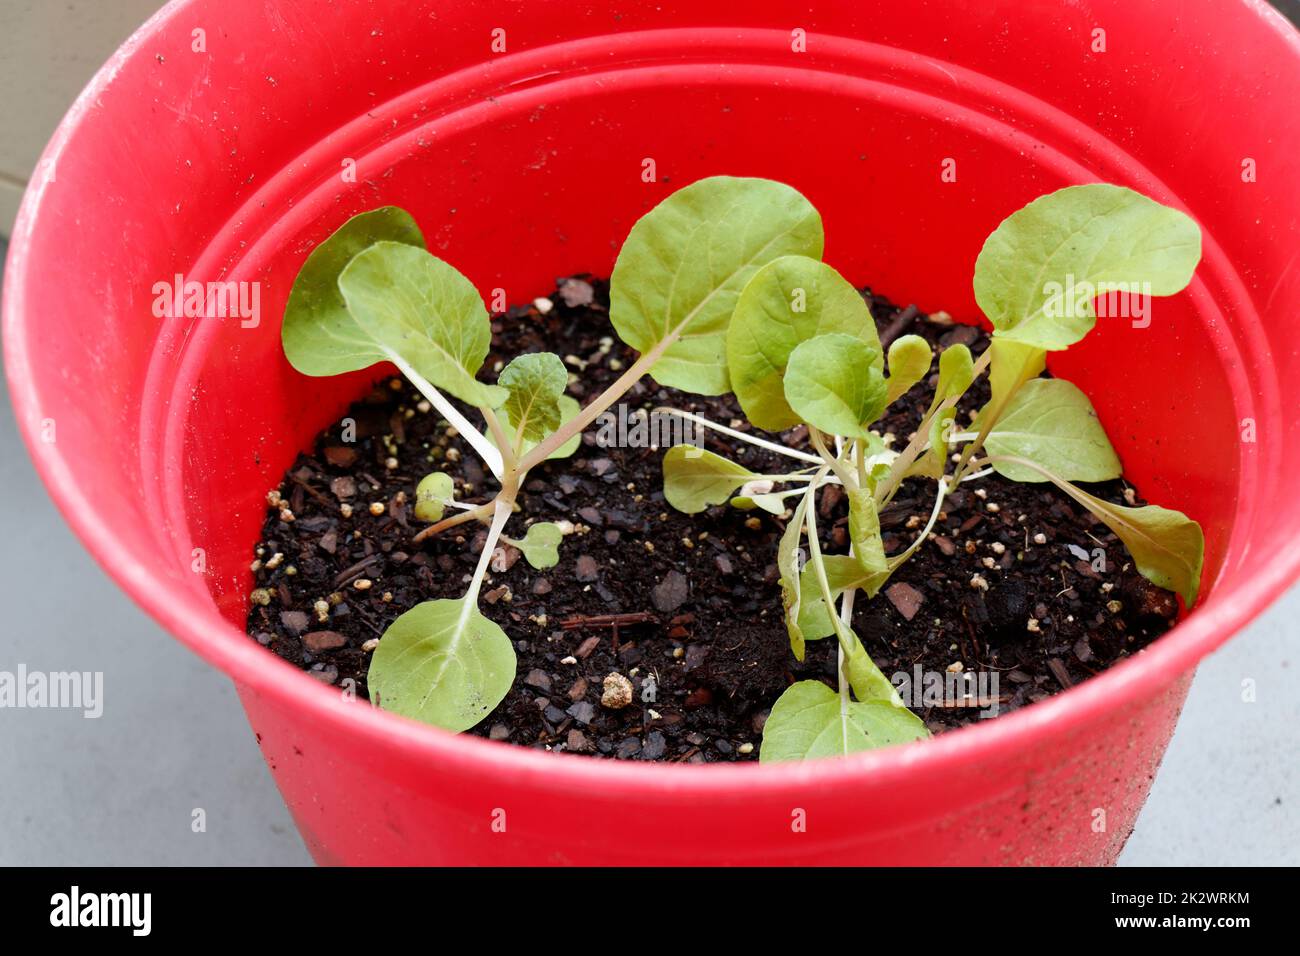 Foglie piantine vegetali che crescono nel terreno di potting in piantatrice rossa Foto Stock